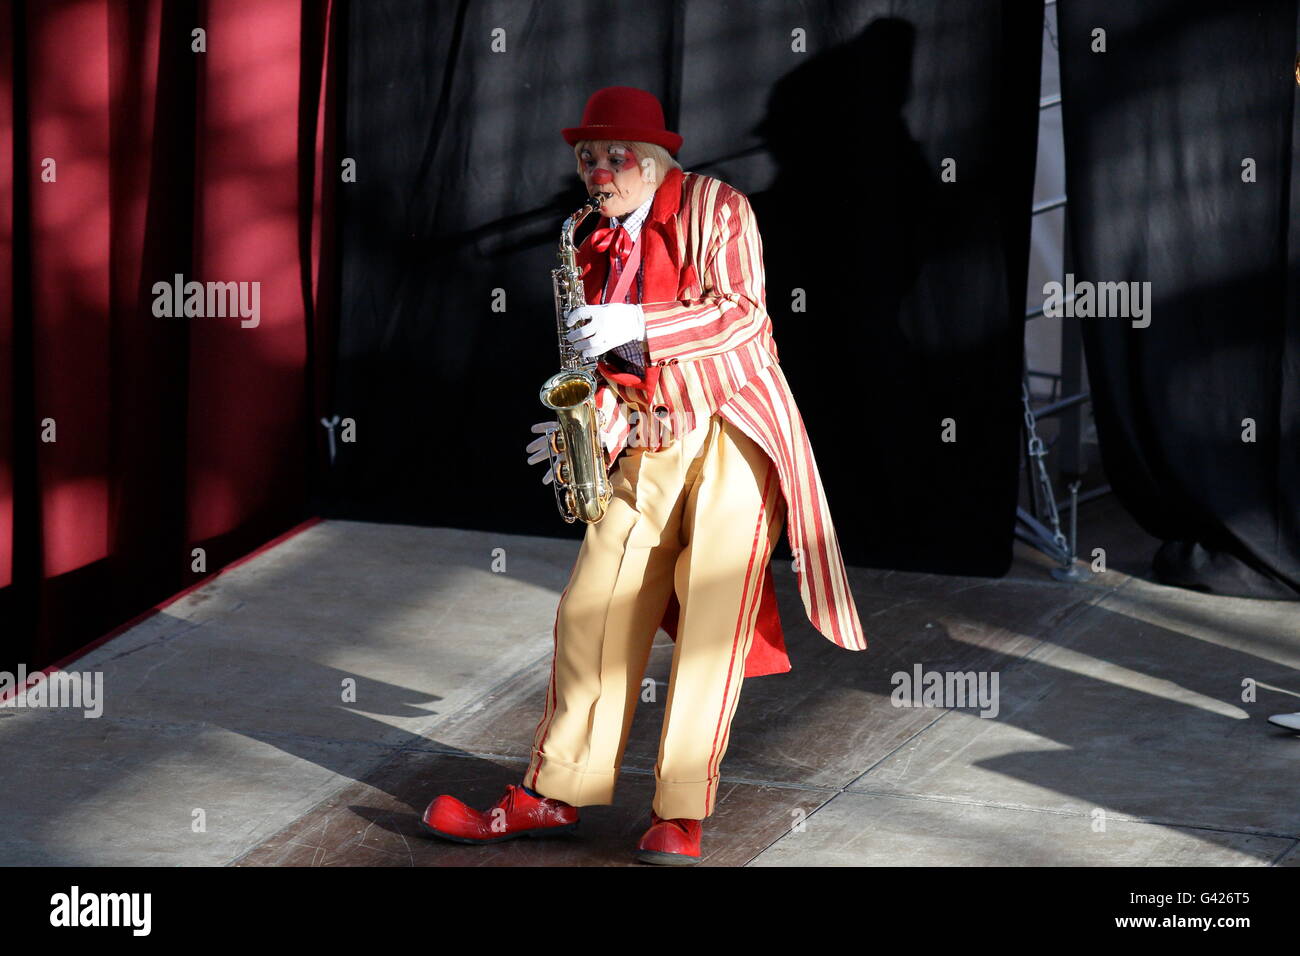 Artista de circo americano fotografías e imágenes de alta resolución -  Página 6 - Alamy